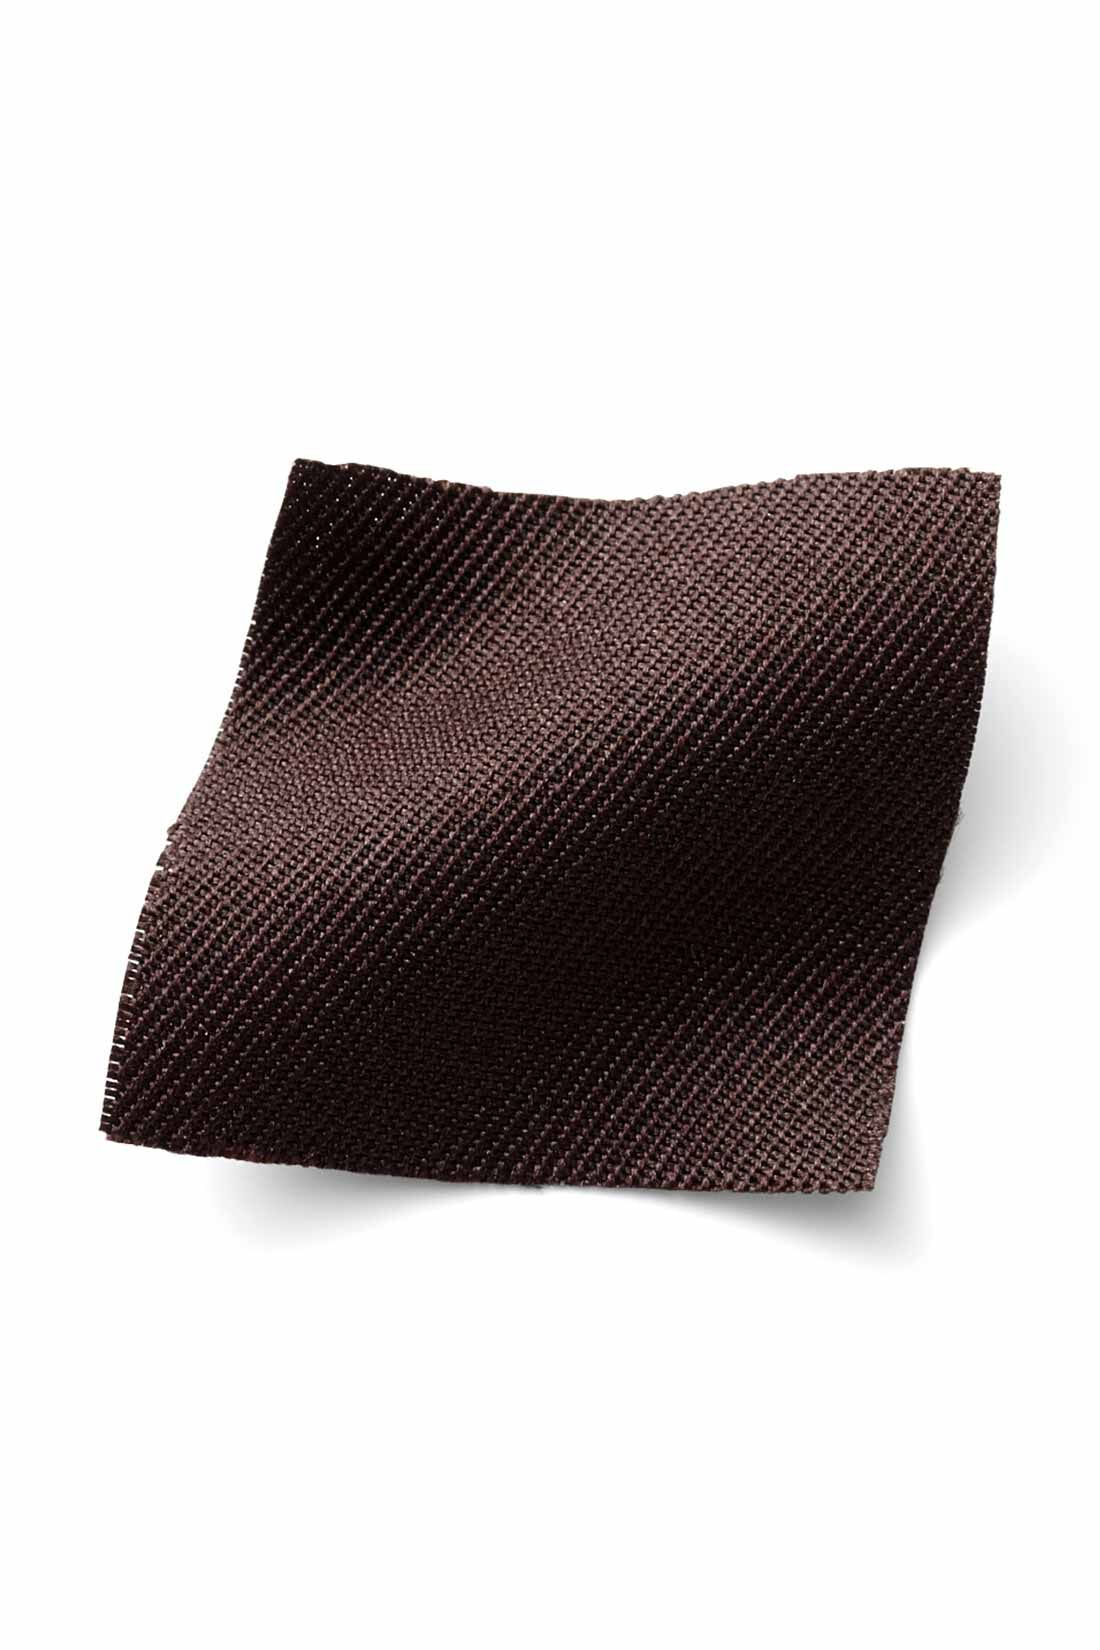 IEDIT|IEDIT[イディット]　着まわし広がる 2-WAY仕様がうれしい大人シルエットのジャンパースカート〈ブラック〉|季節を問わずはきやすい、ほどよい厚みの布はく素材。